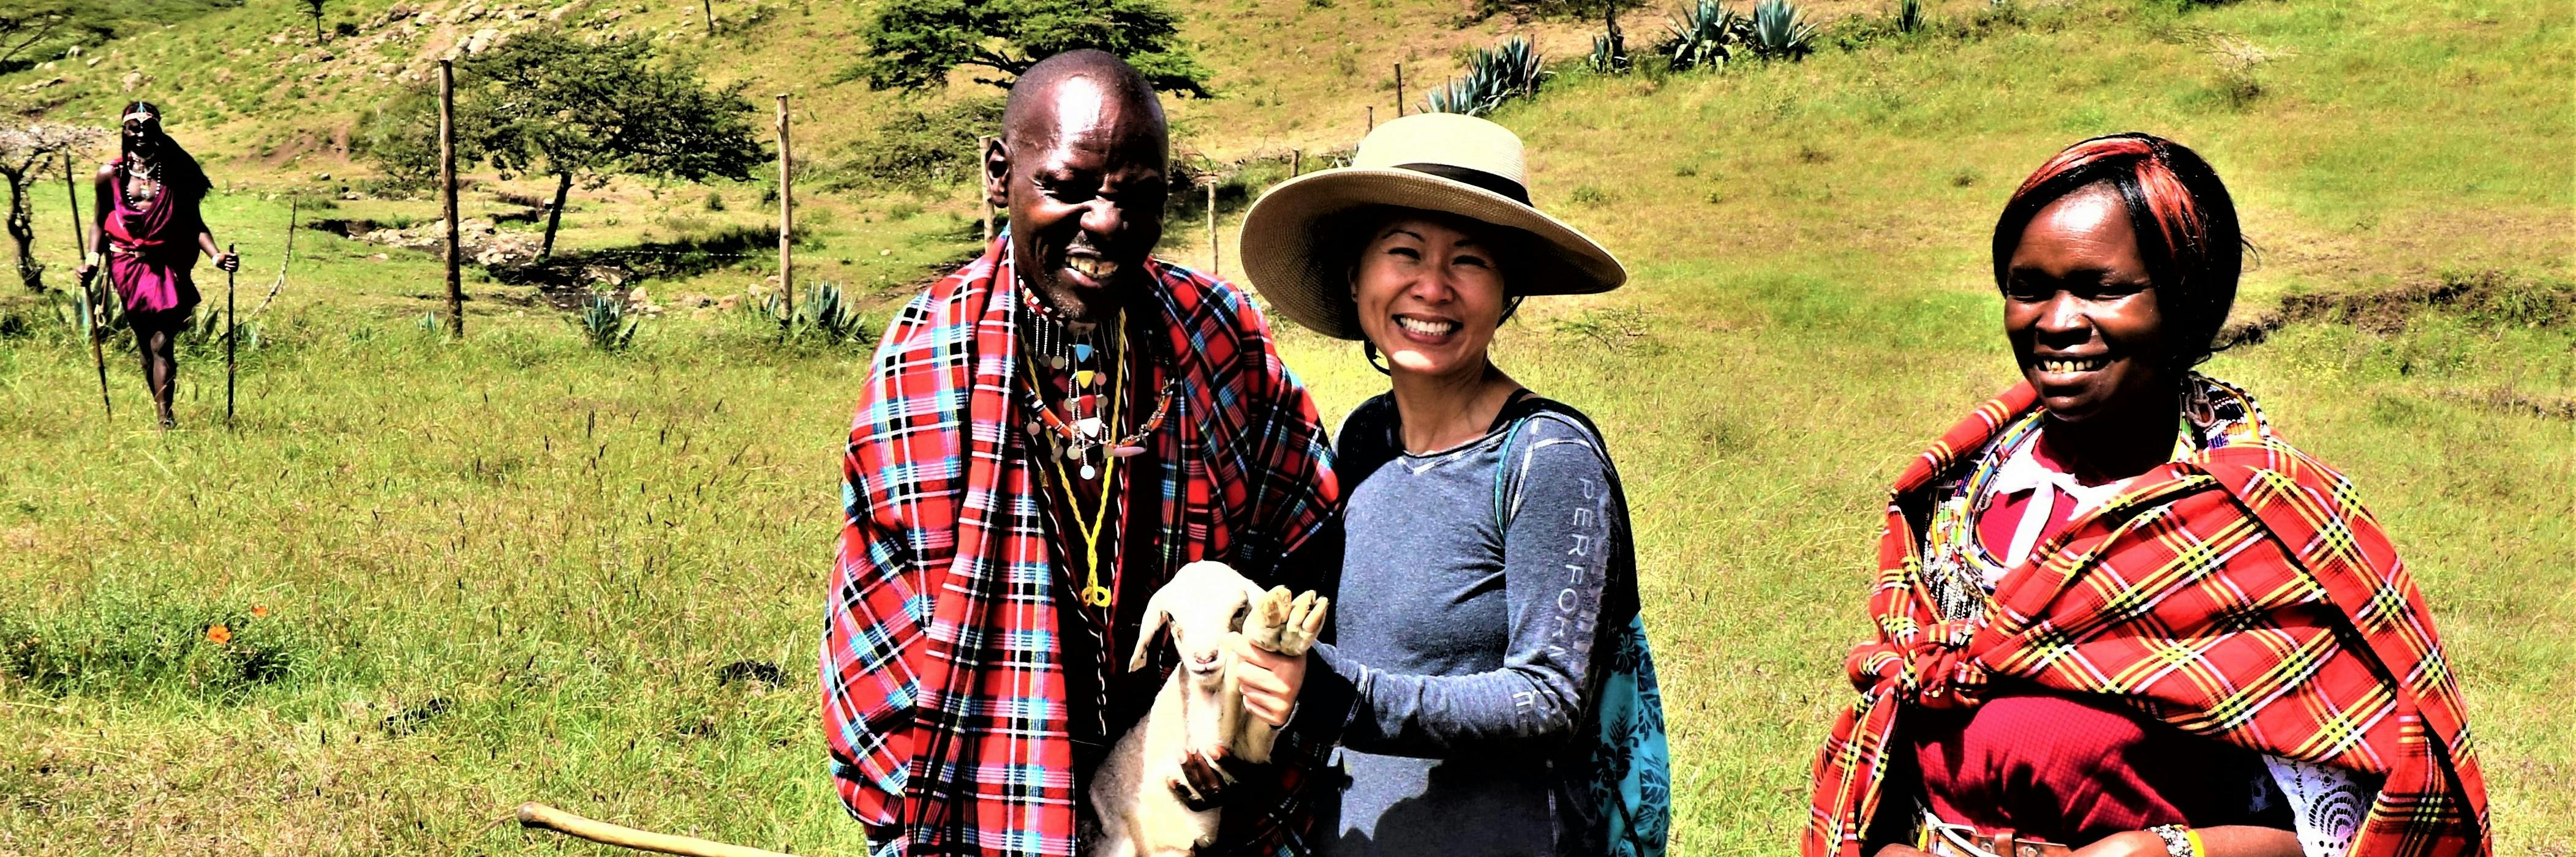 Cultura e tradições quenianas excursão de 5 dias saindo de Nairóbi